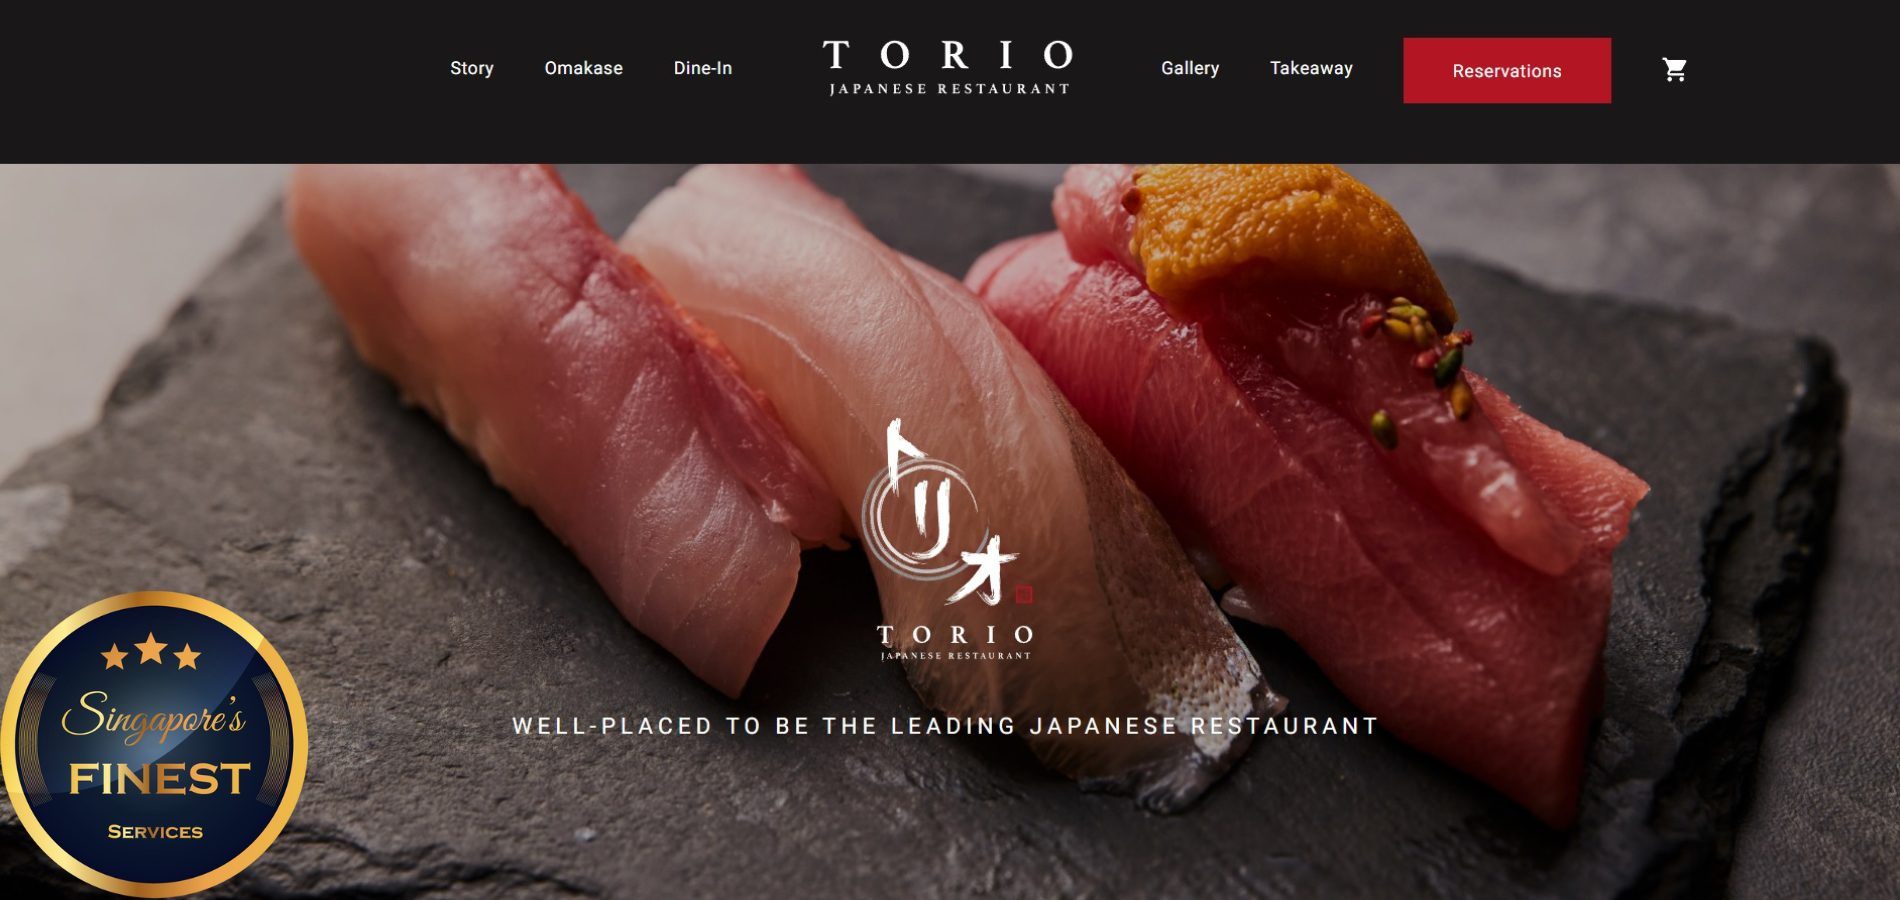 Torio Japanese Restaurant - Japanese Restaurant in Singapore